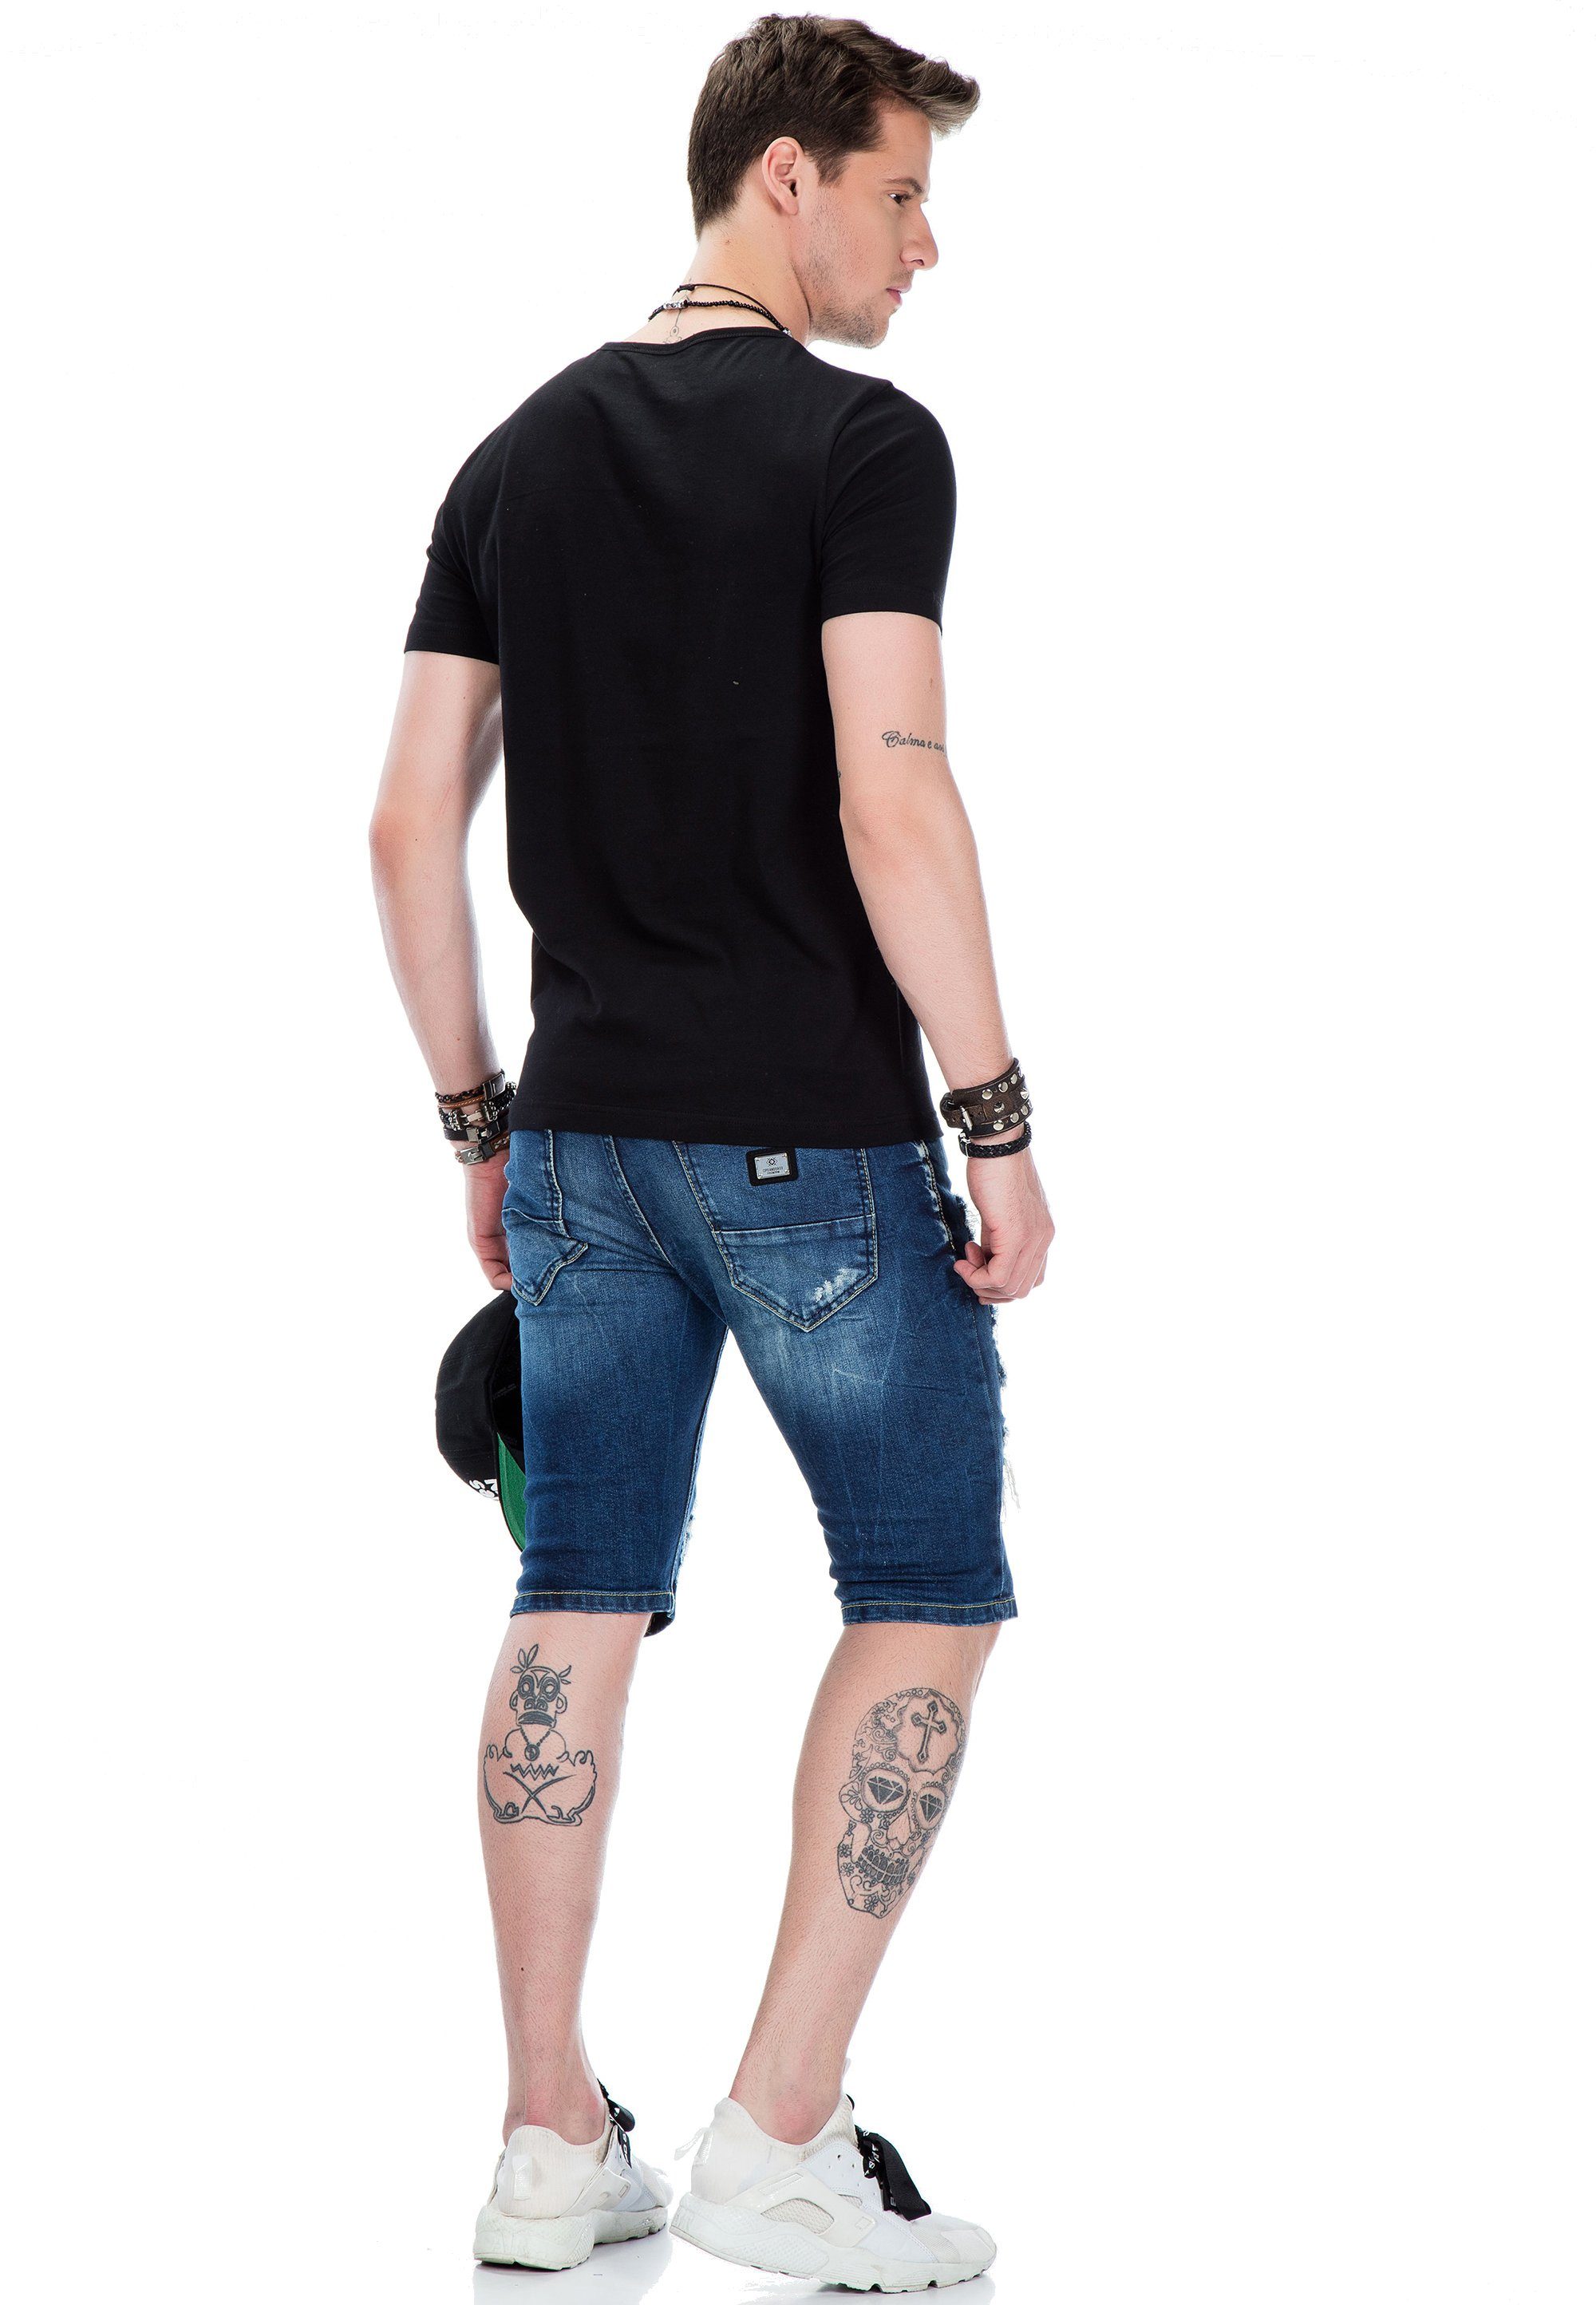 Baxx Foliendruck & schwarz glänzendem mit Cipo T-Shirt